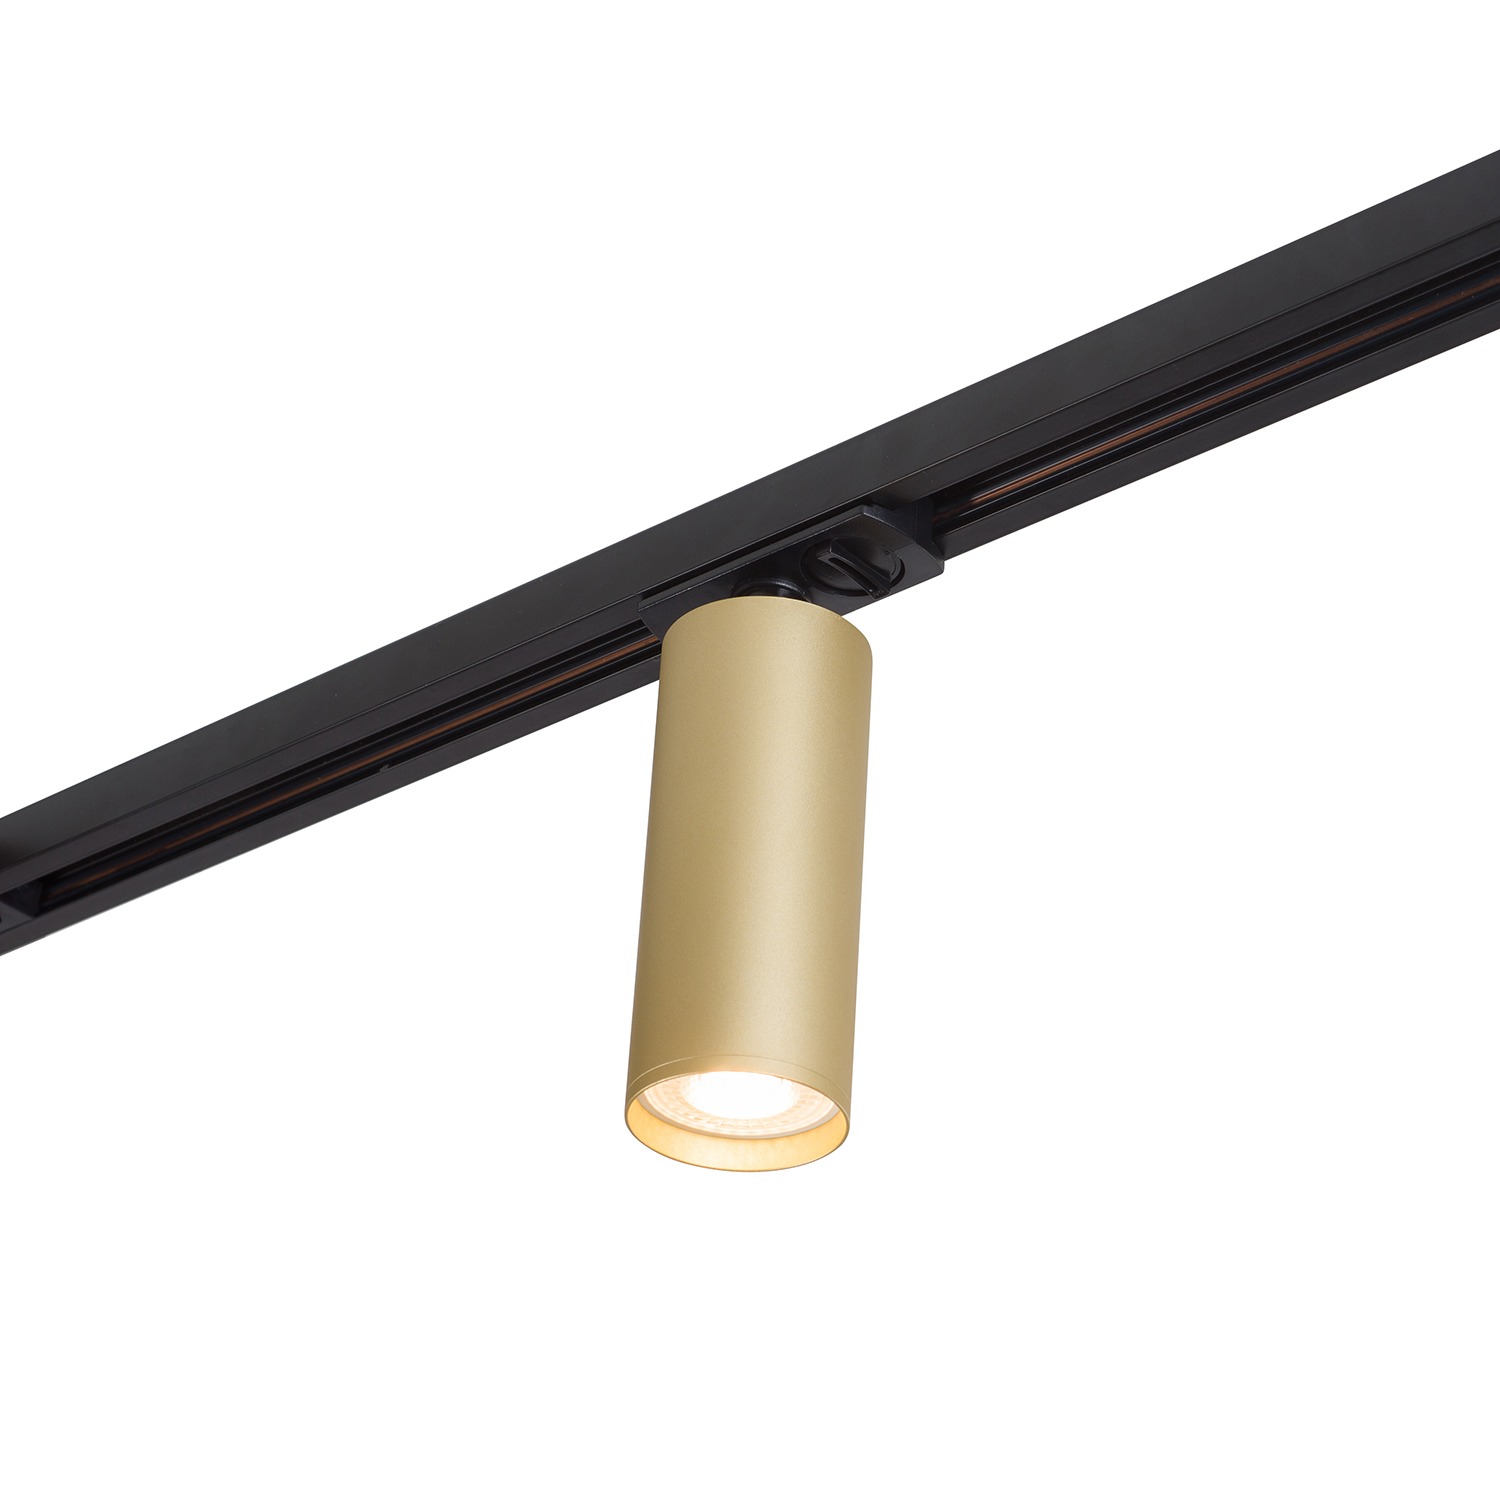 DK6202-BG Трековый светильник IP 20, 15 Вт, GU10, матовое золото с черным, алюминий